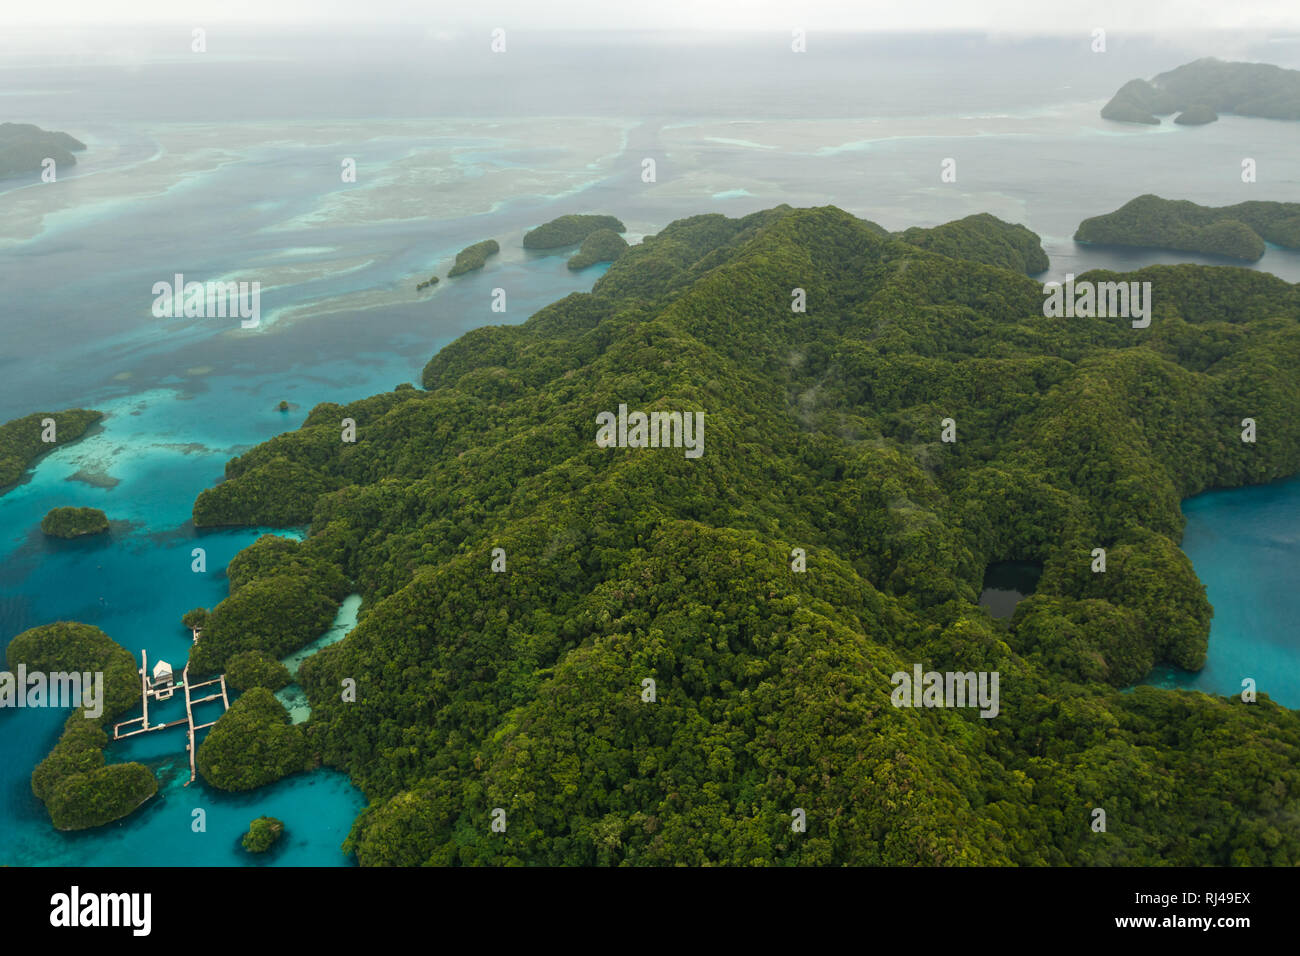 Luftaufnahme von Square Docks und in Gruppe von robusten südpazifischen Inseln mit üppiger Vegetation und Korallenriffe in türkis Meer bedeckt Stockfoto